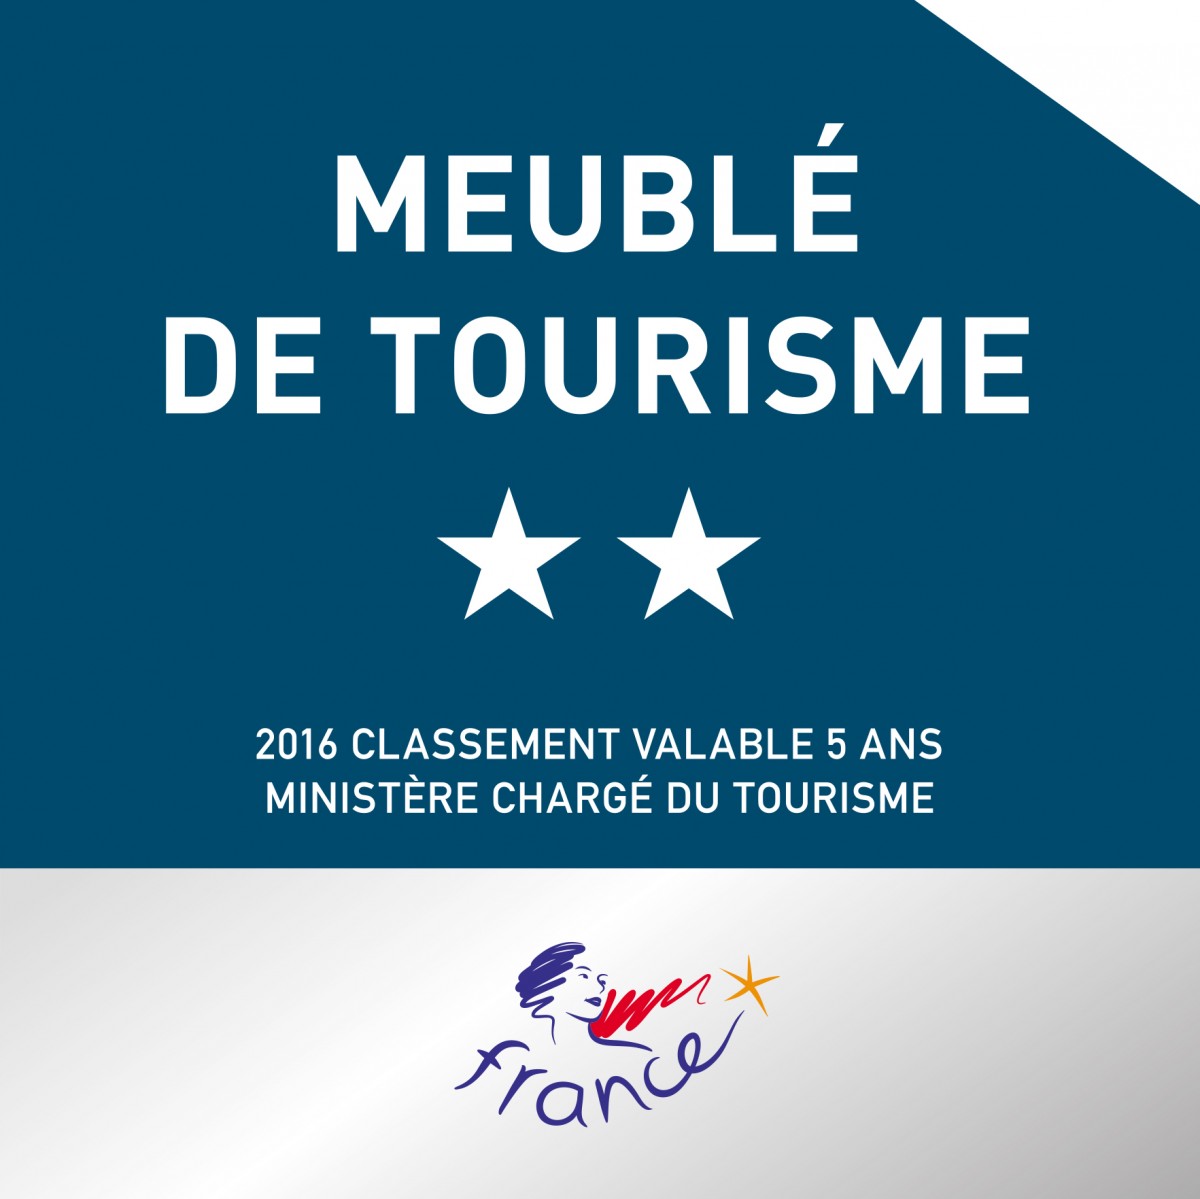 plaque-meuble-tourisme2-2016-v-11611